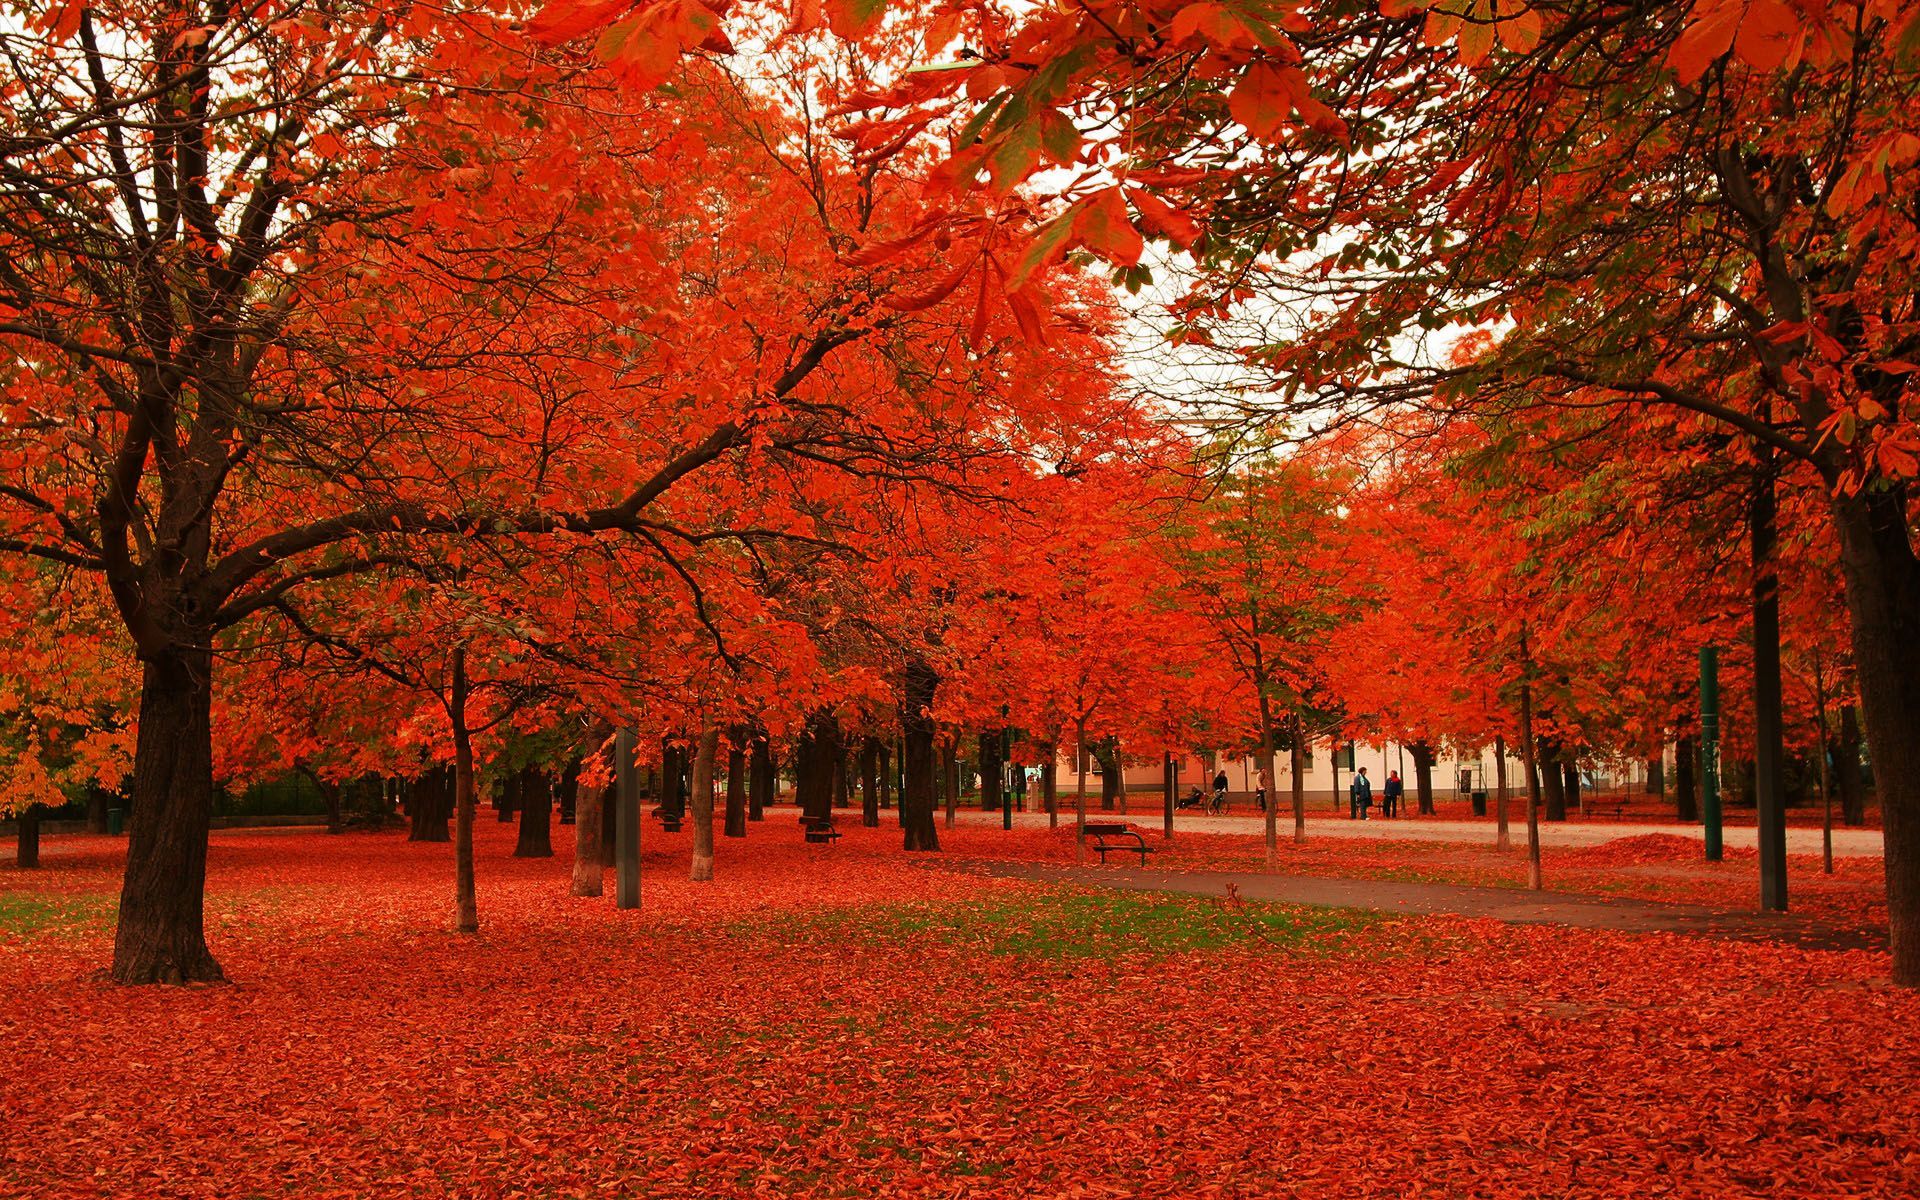 Red autumn foliage photo